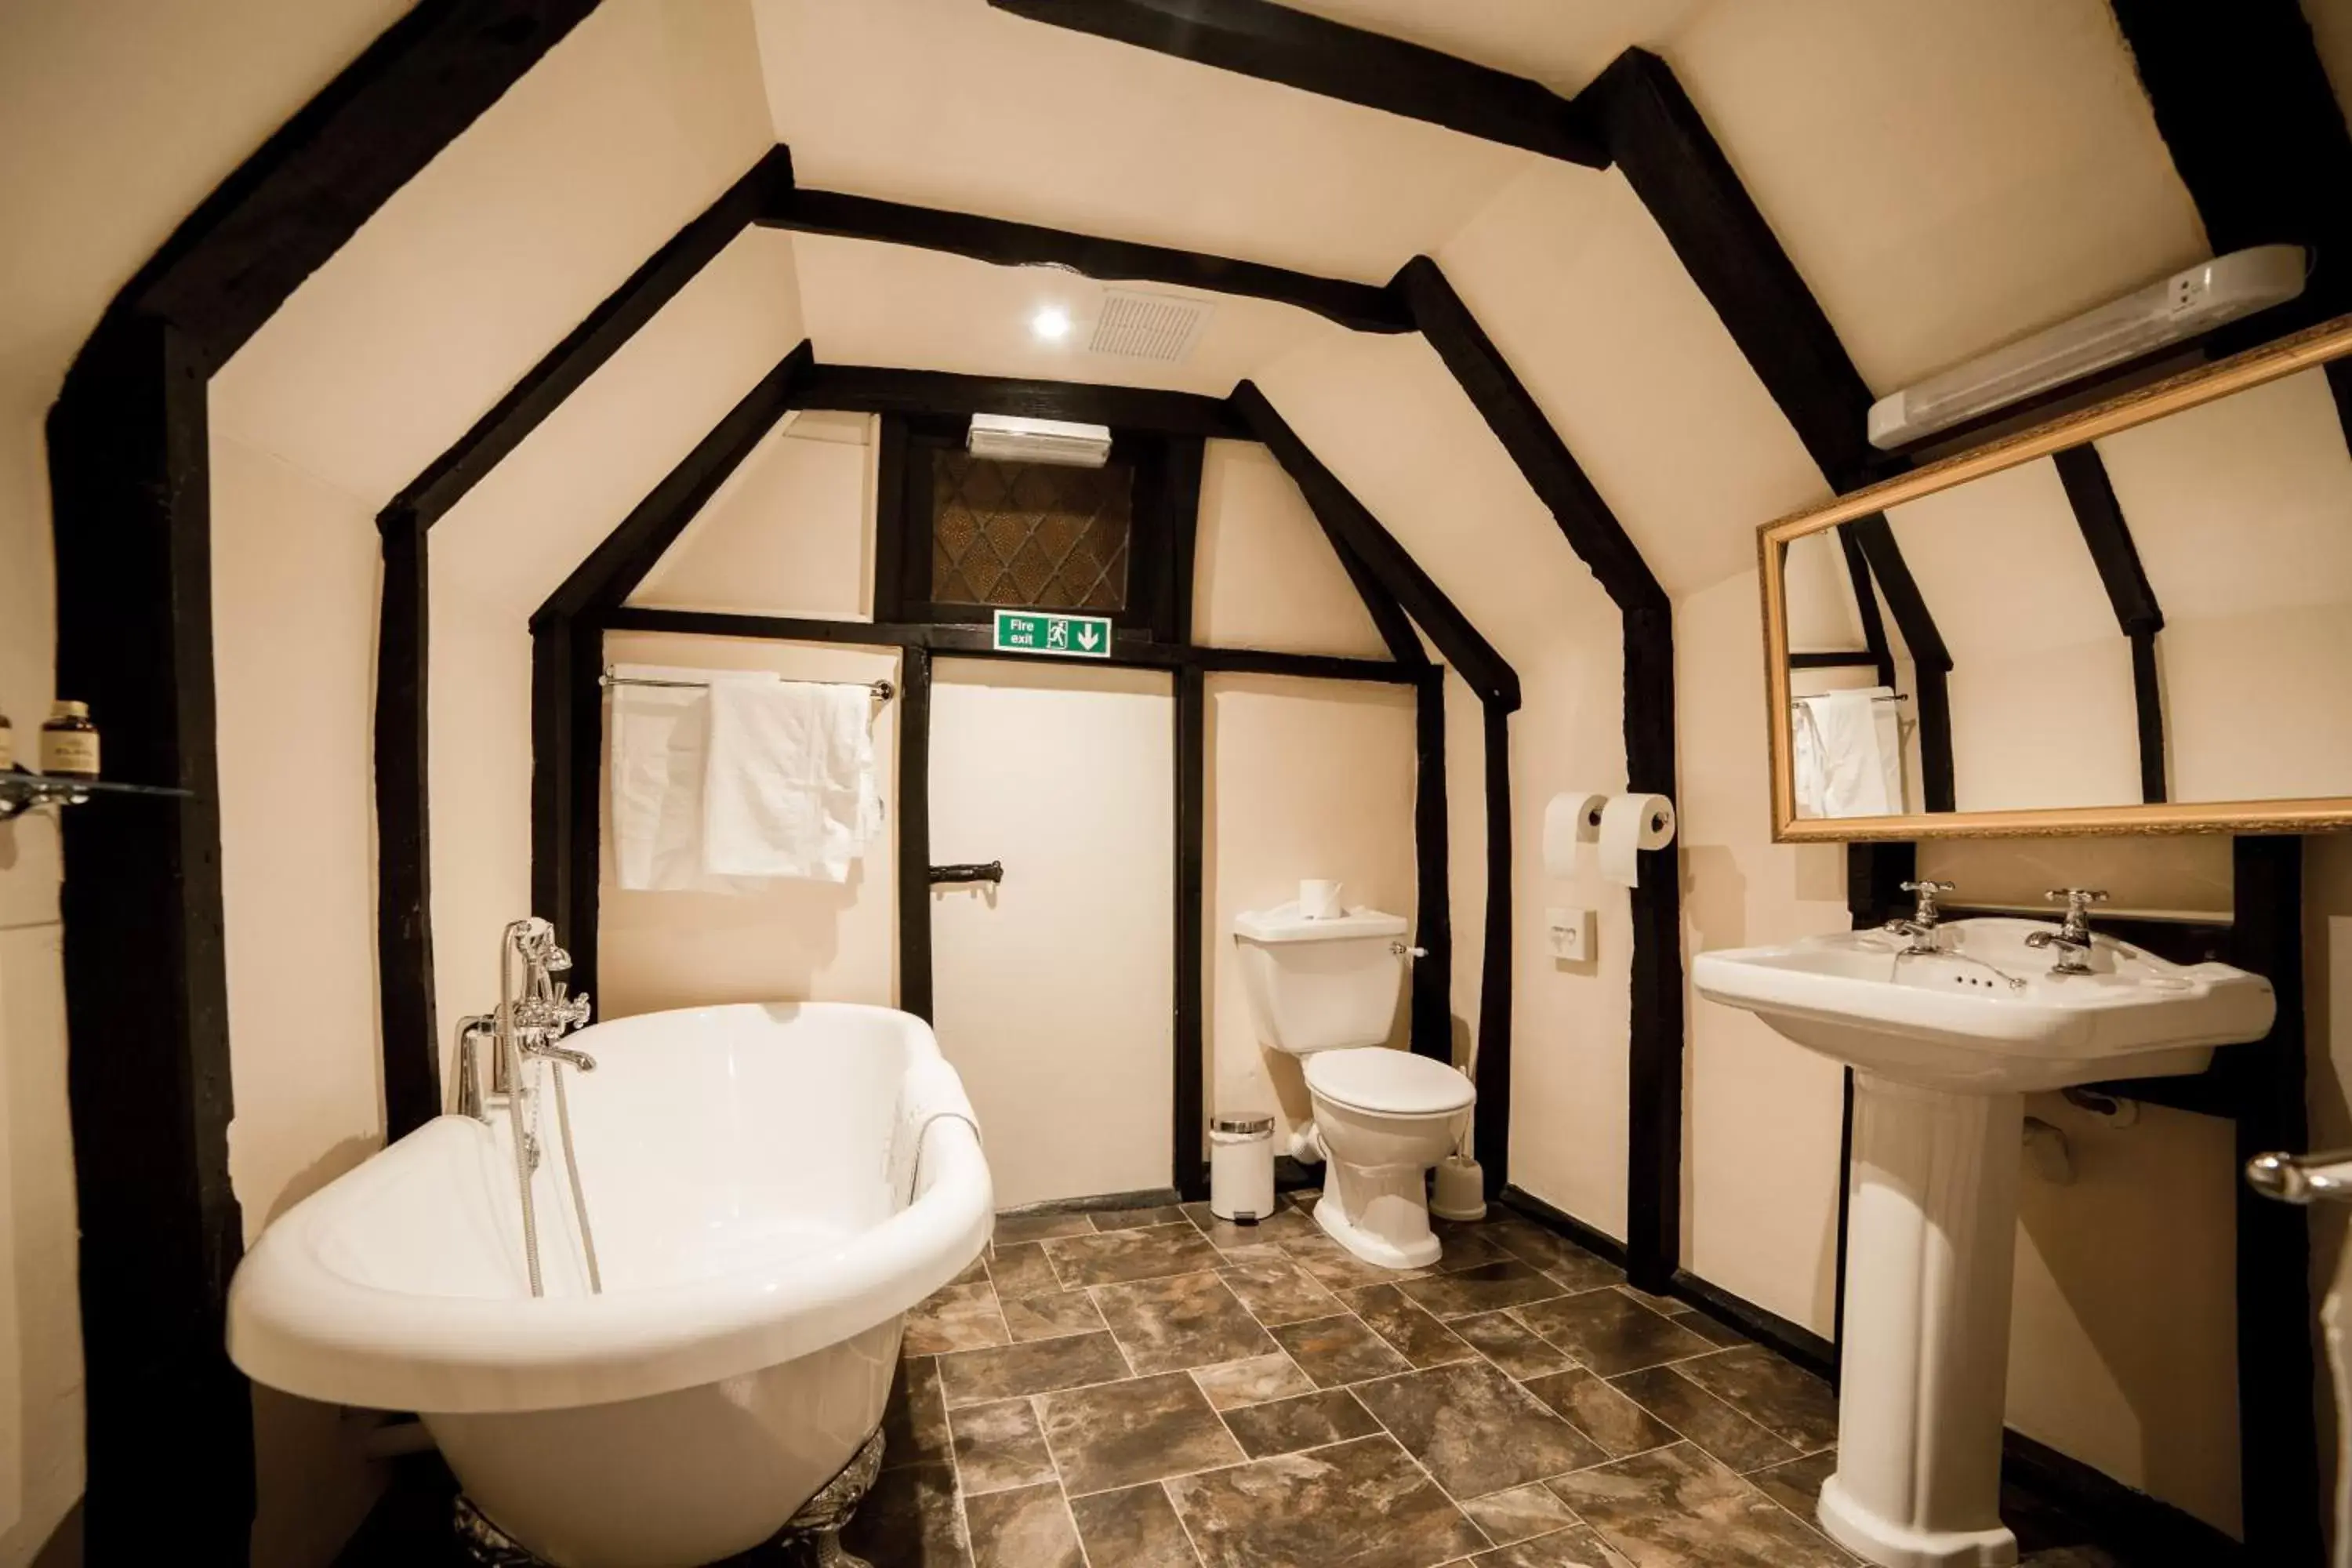 Toilet, Bathroom in Mermaid Inn